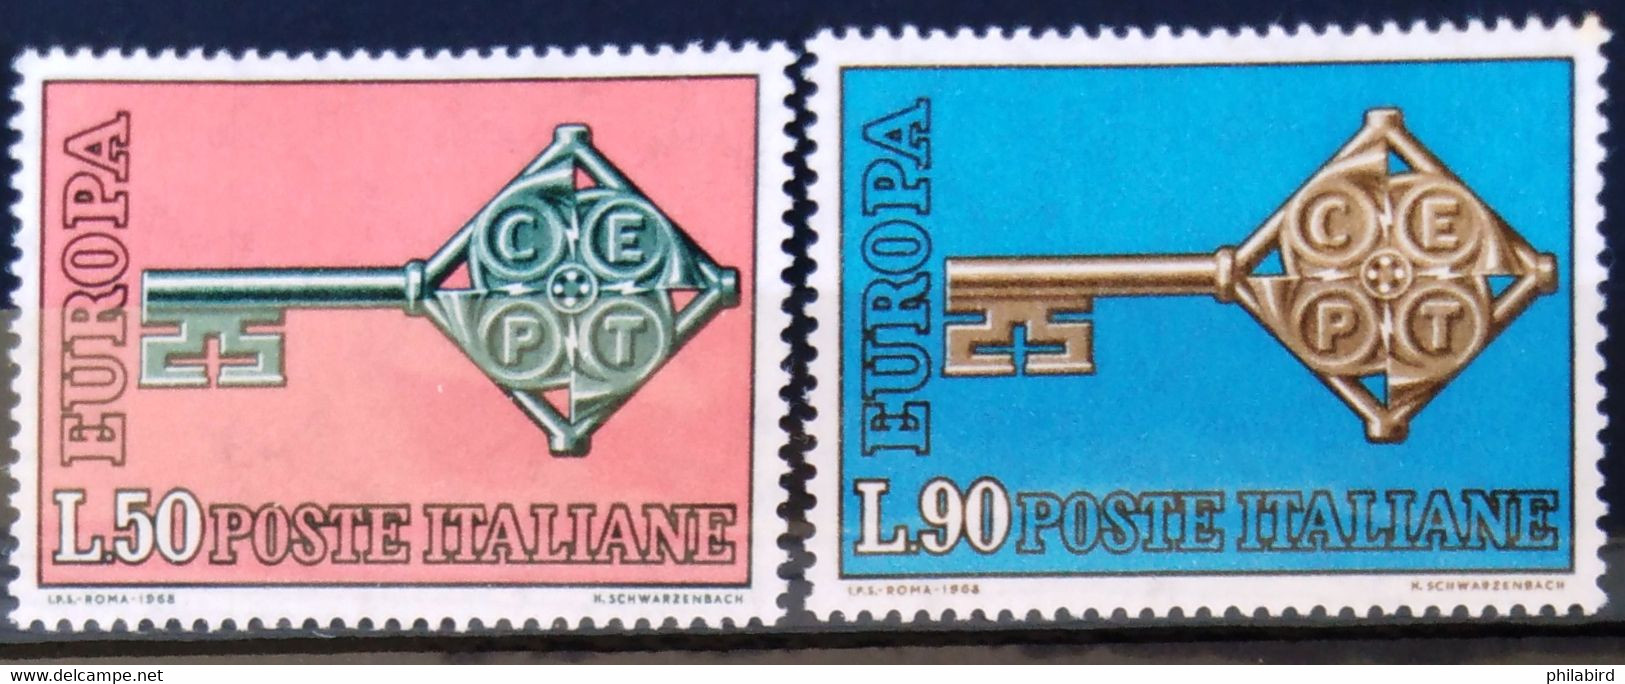 EUROPA 1968 - ITALIE                    N° 1010/1011                       NEUF** - 1968